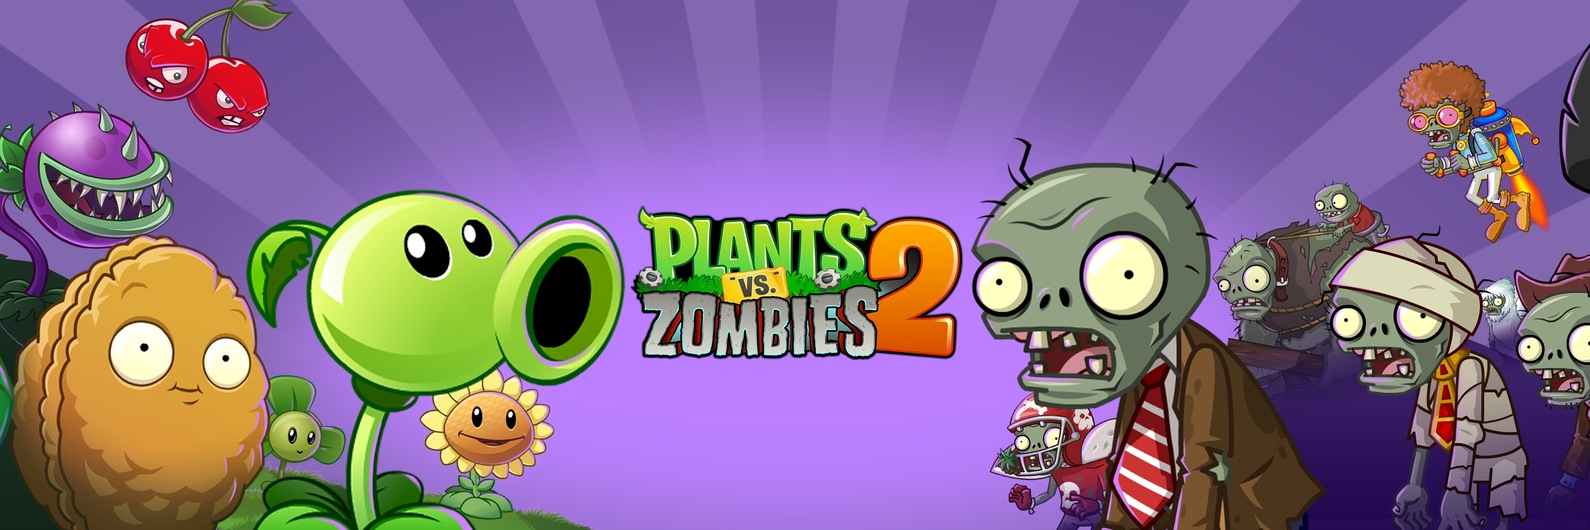 Растения против зомби плантес